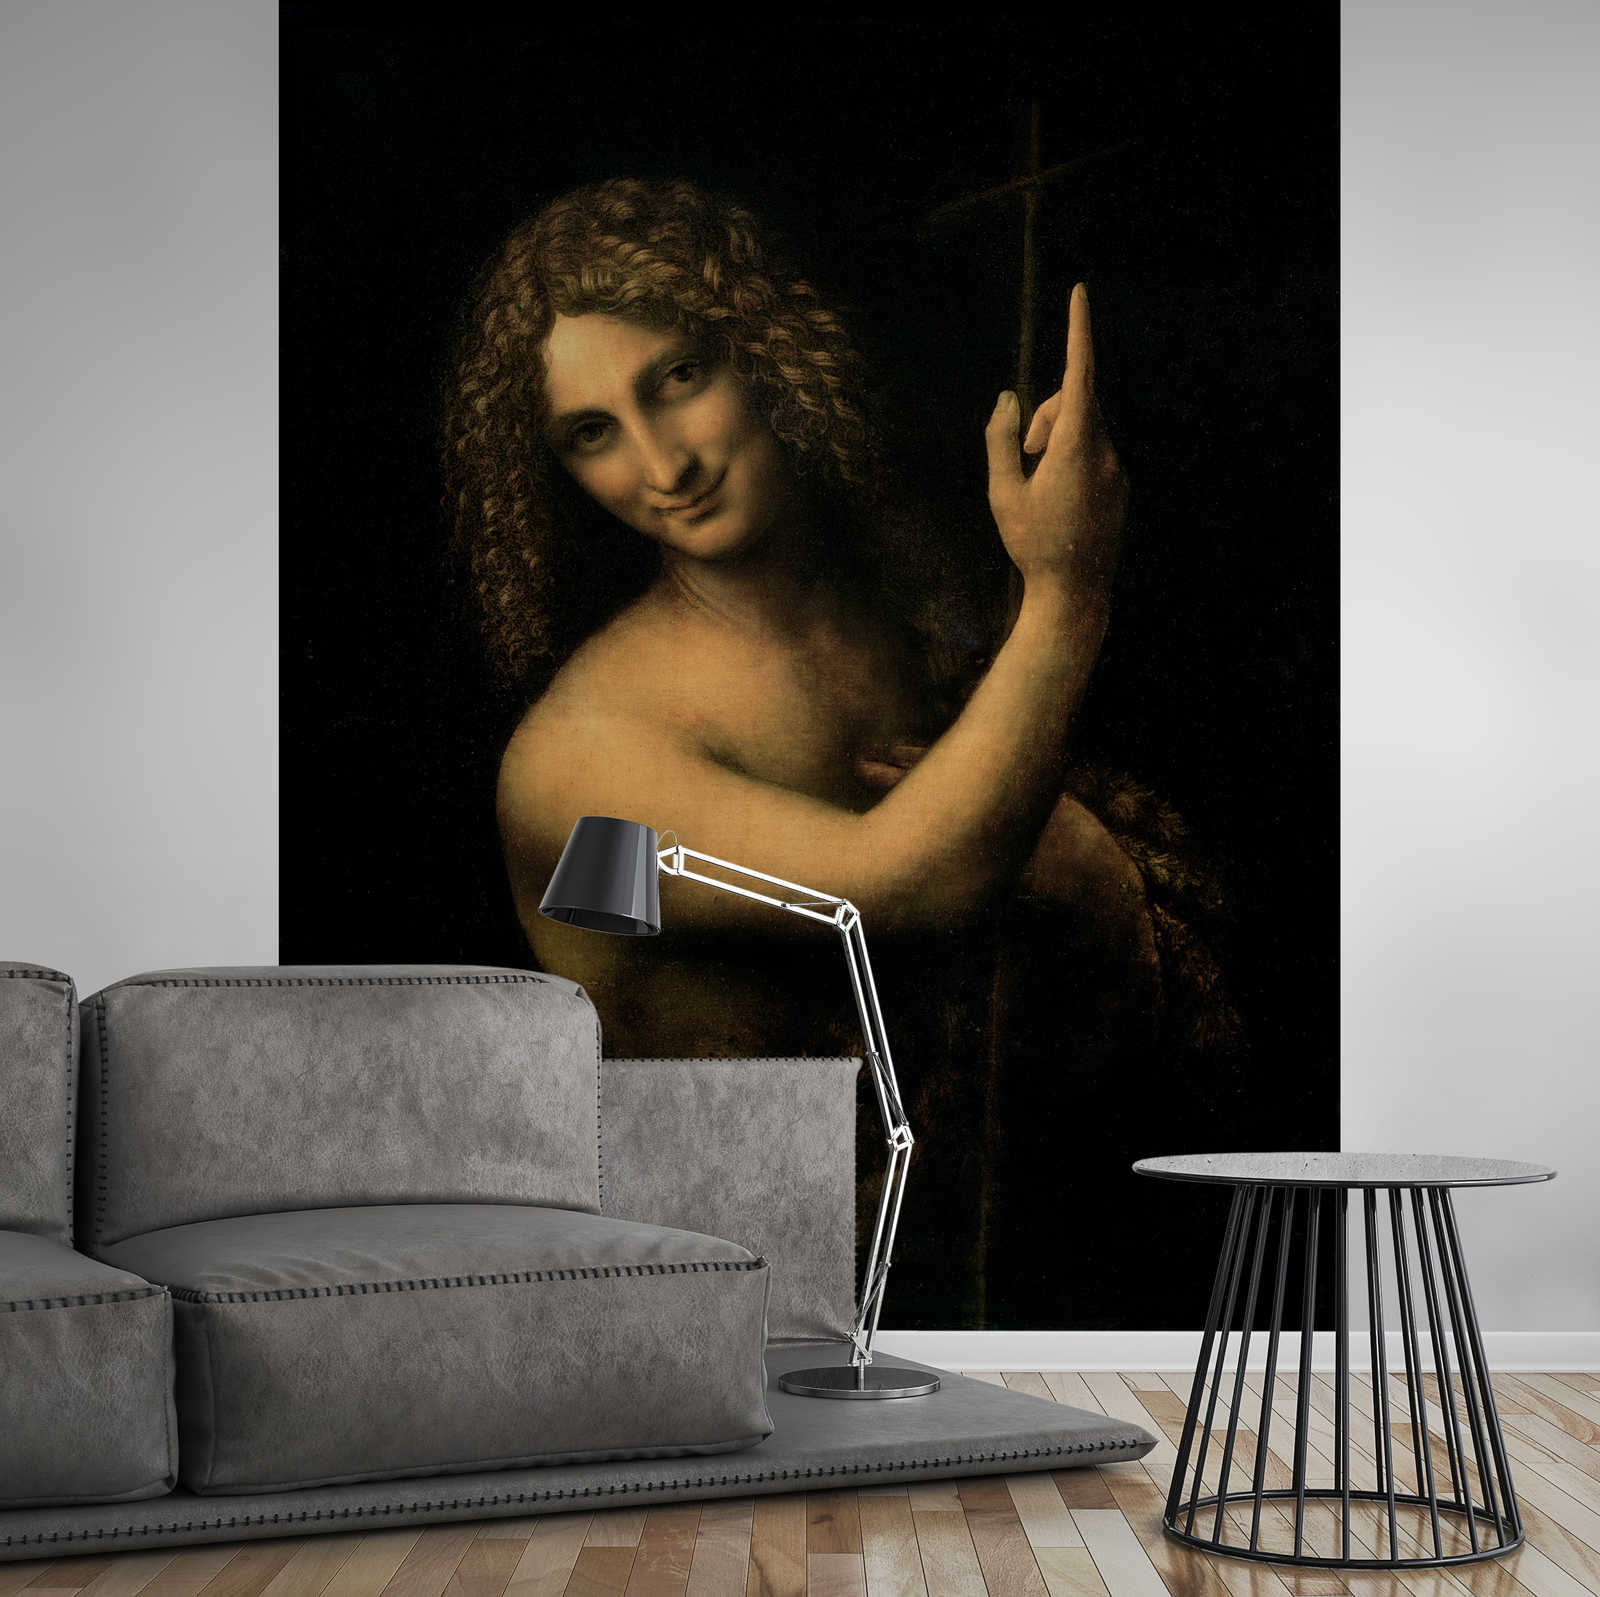             Johannes de Doper" muurschildering door Leonardo da Vinci
        